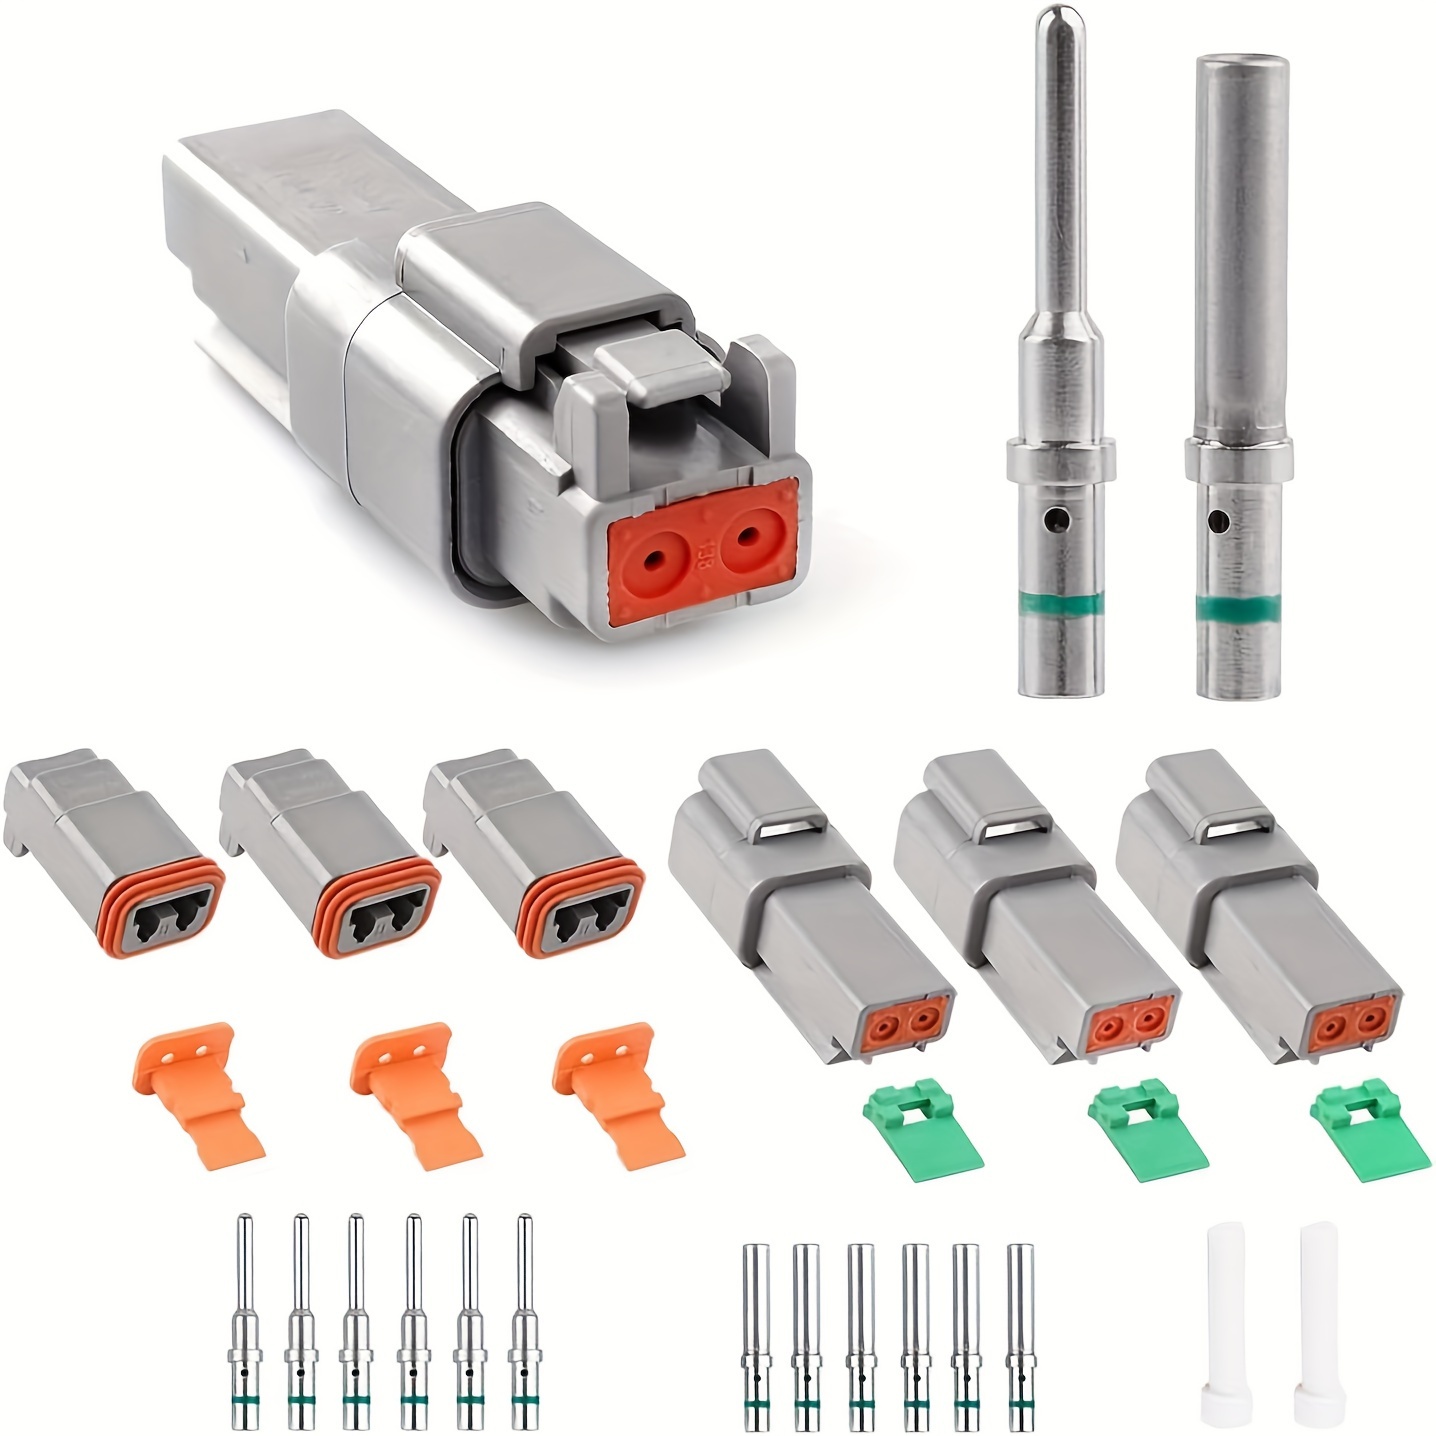 Deutsch - Kit de conectores DT en configuraciones de 2, 3, 4, 6, 8, 12  pines, contactos estampados tamaño 16, conectores eléctricos automotrices